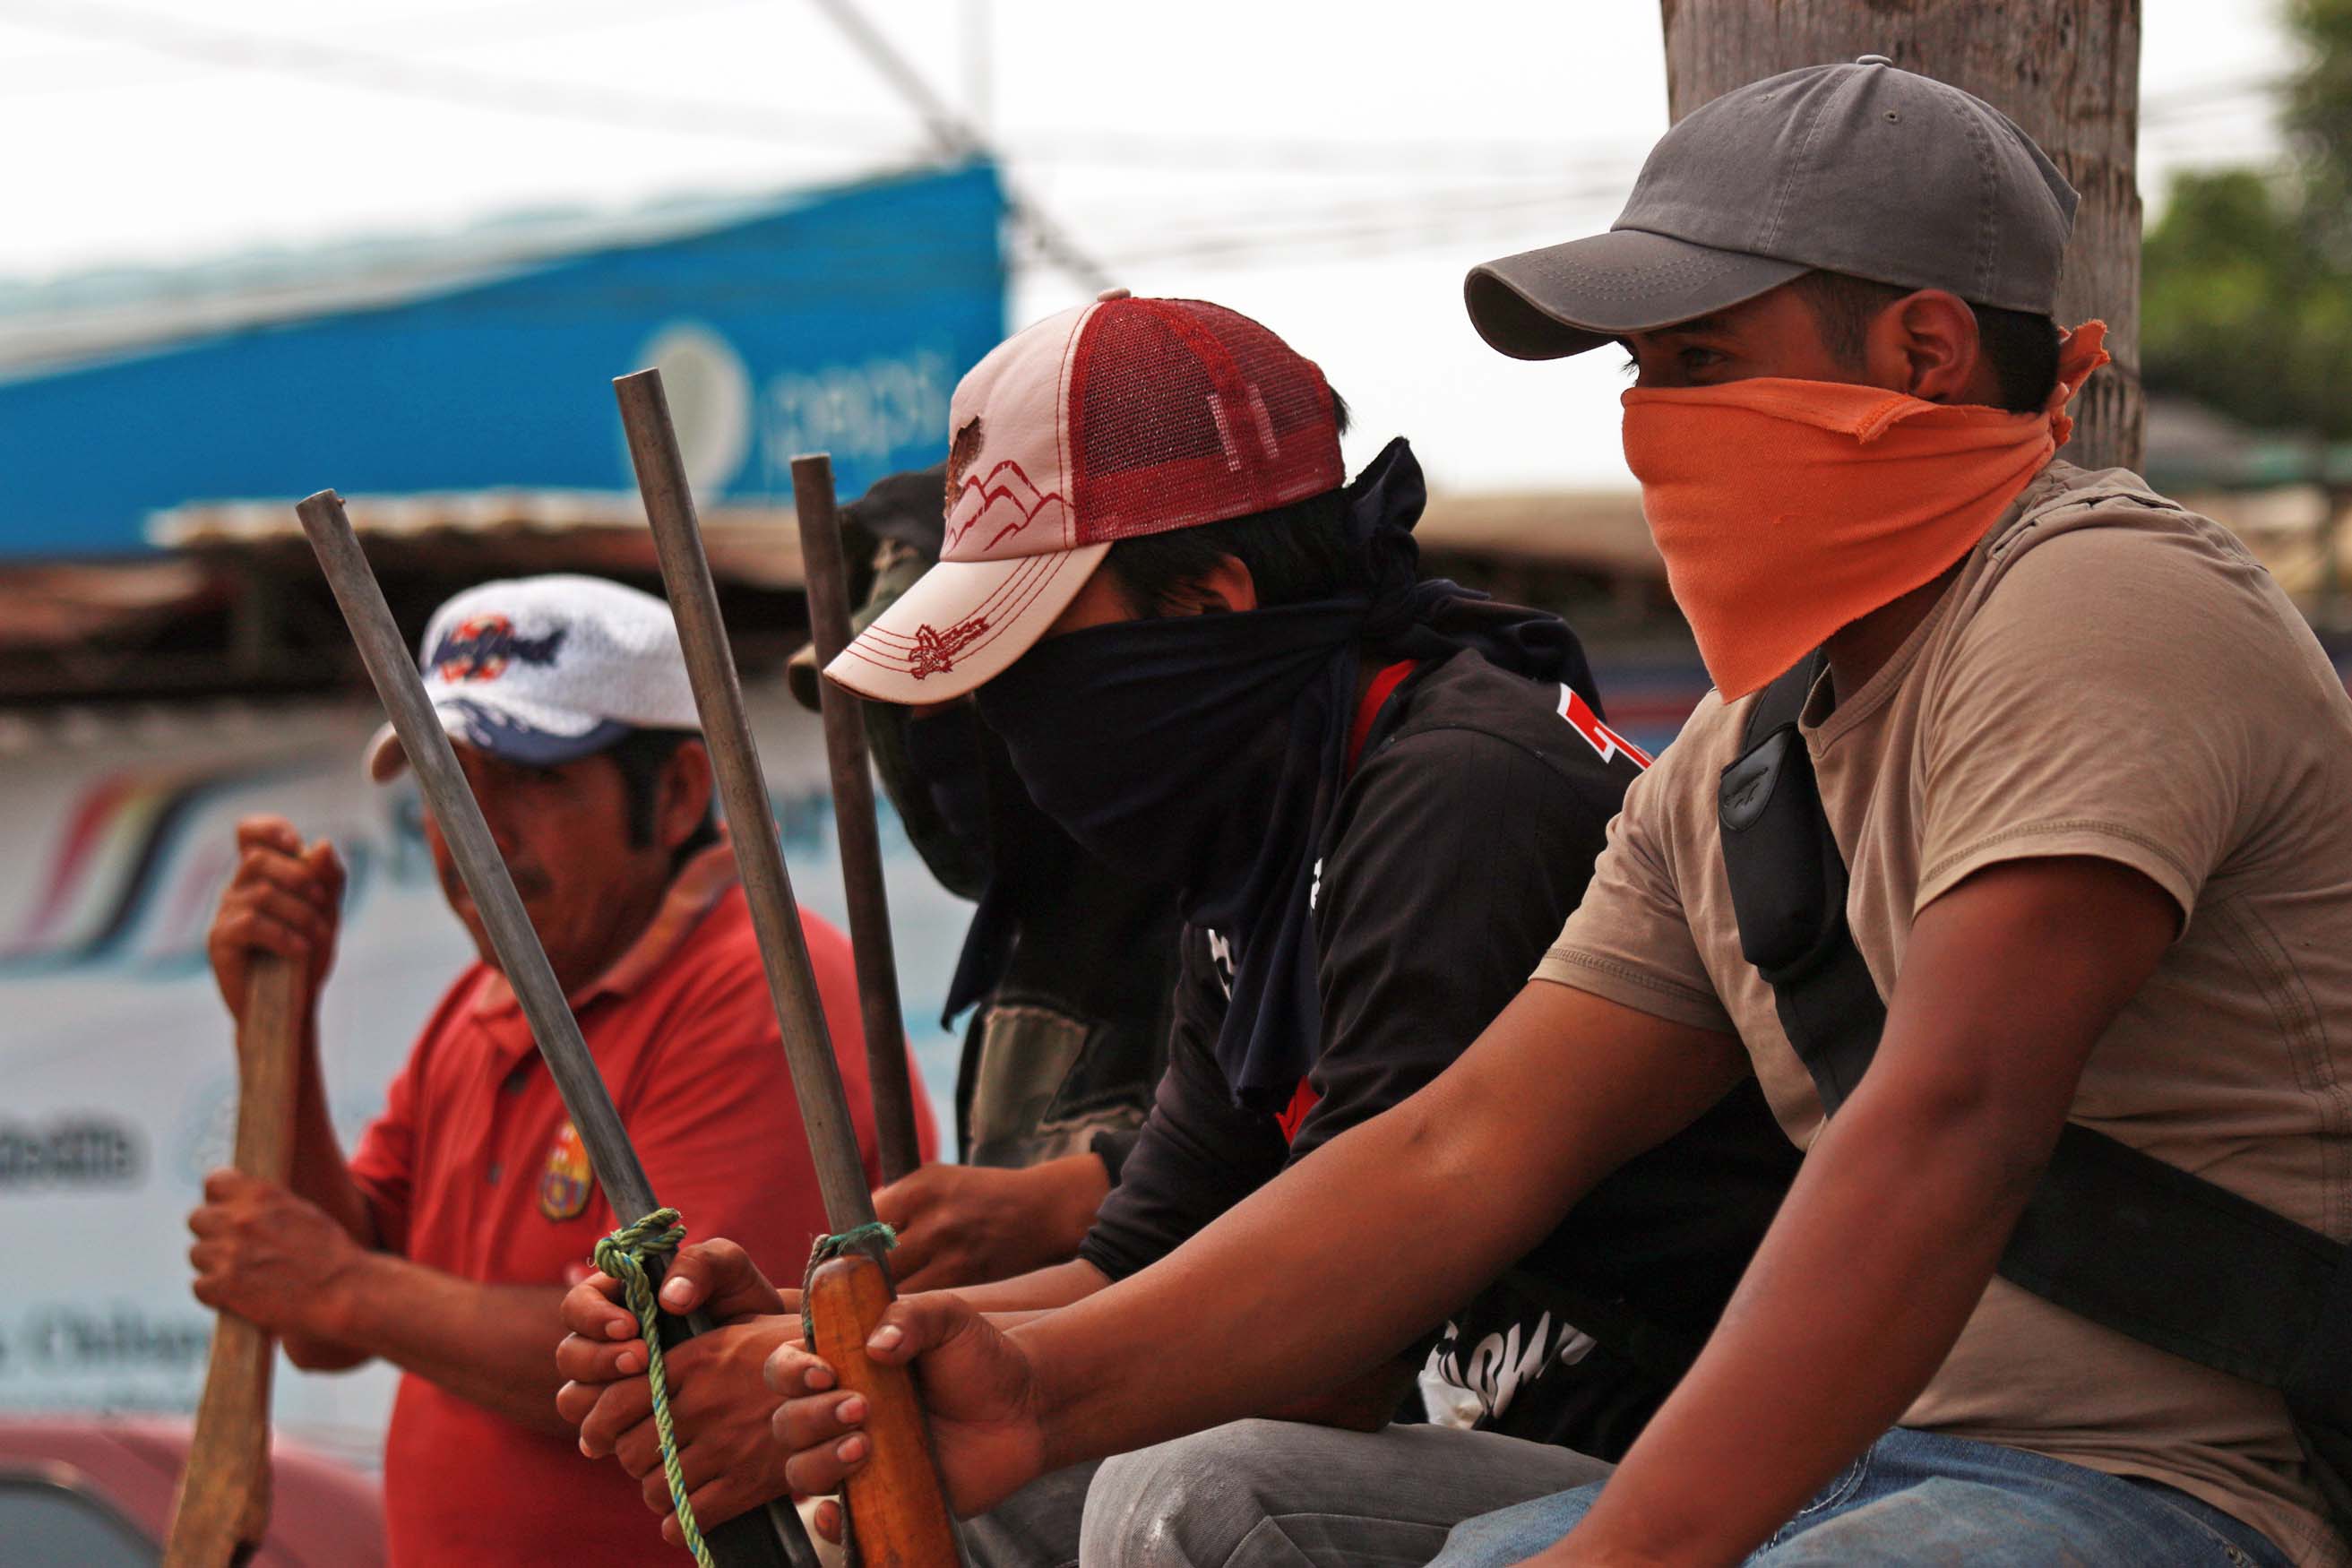  Civiles armados se instalan en las entradas a Chilapa